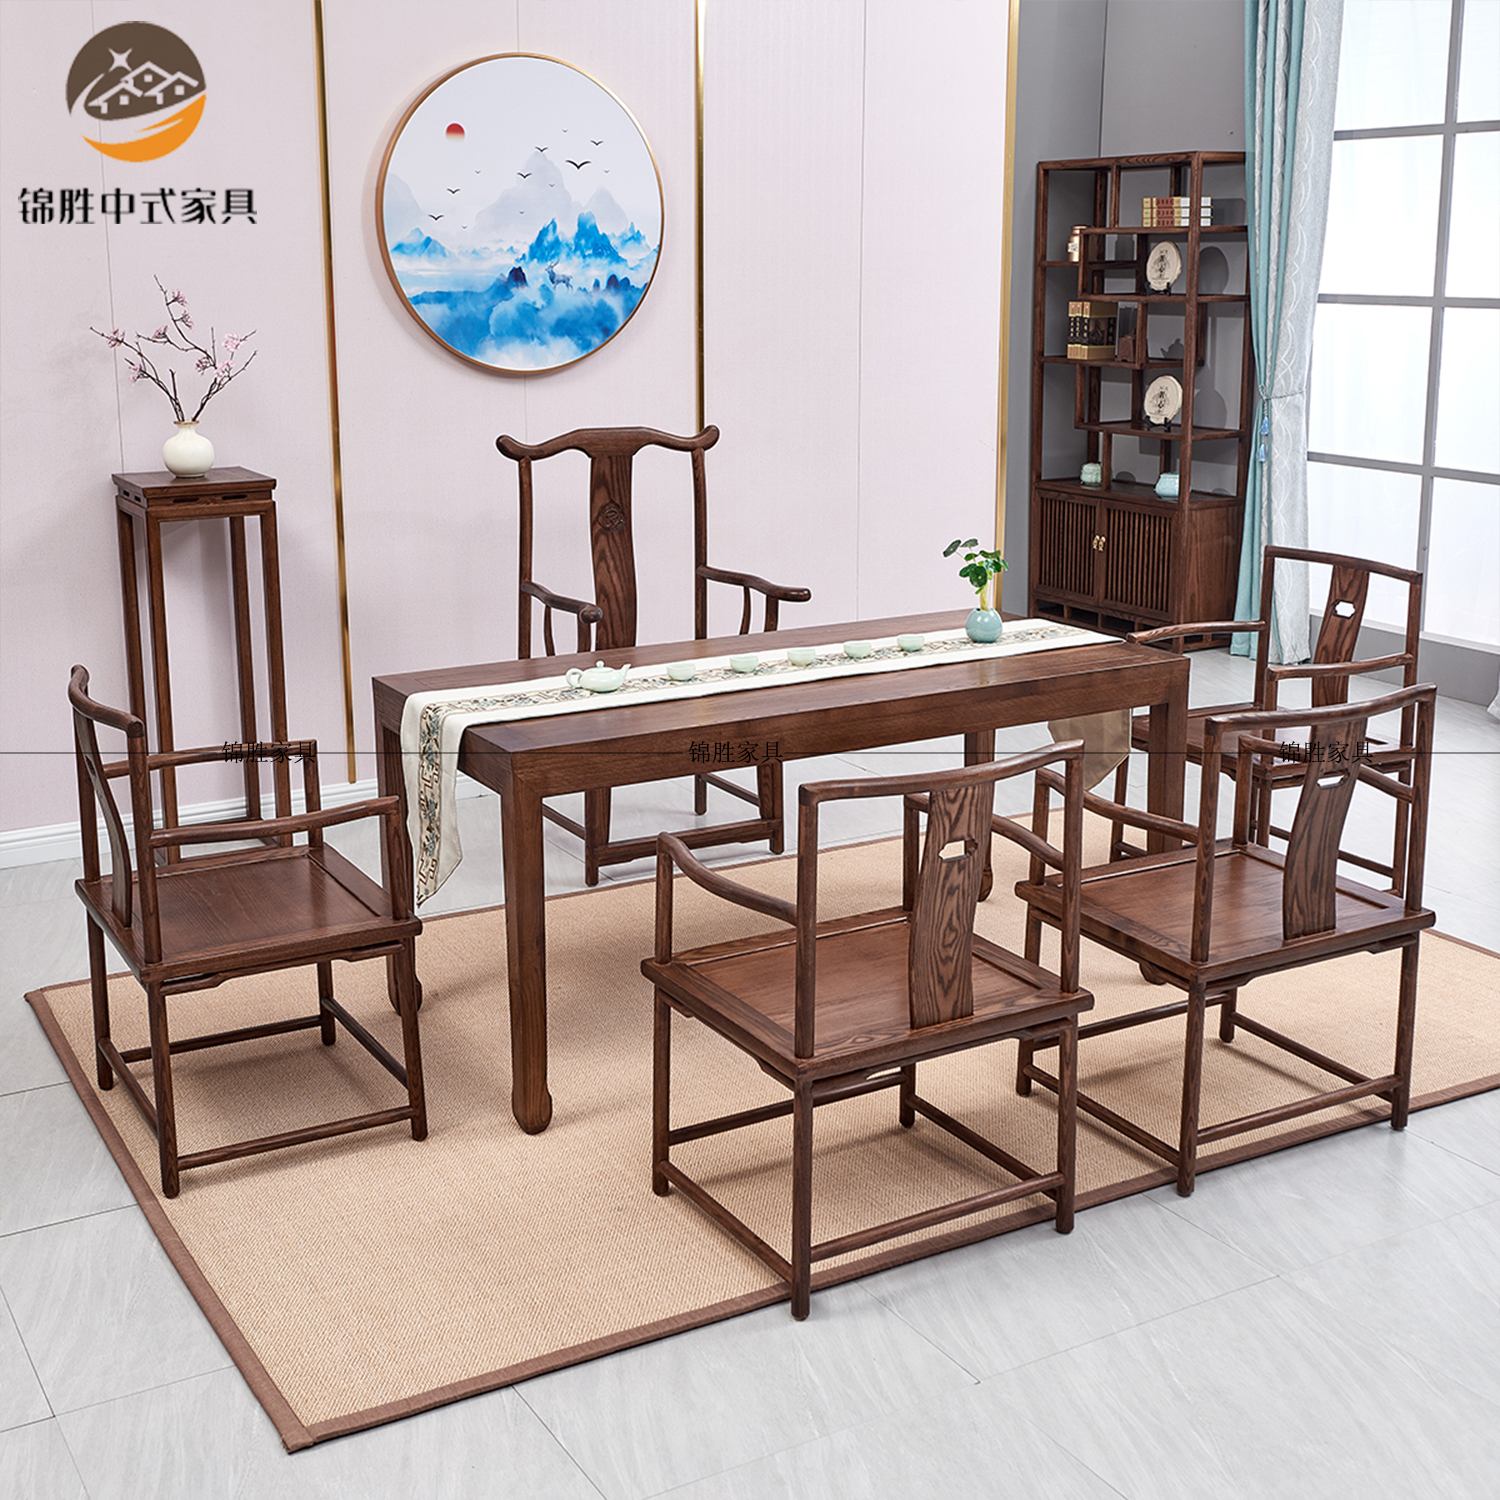 新中式茶桌椅组合实木功夫泡茶禅意茶几简约现代胡桃色茶台白蜡木